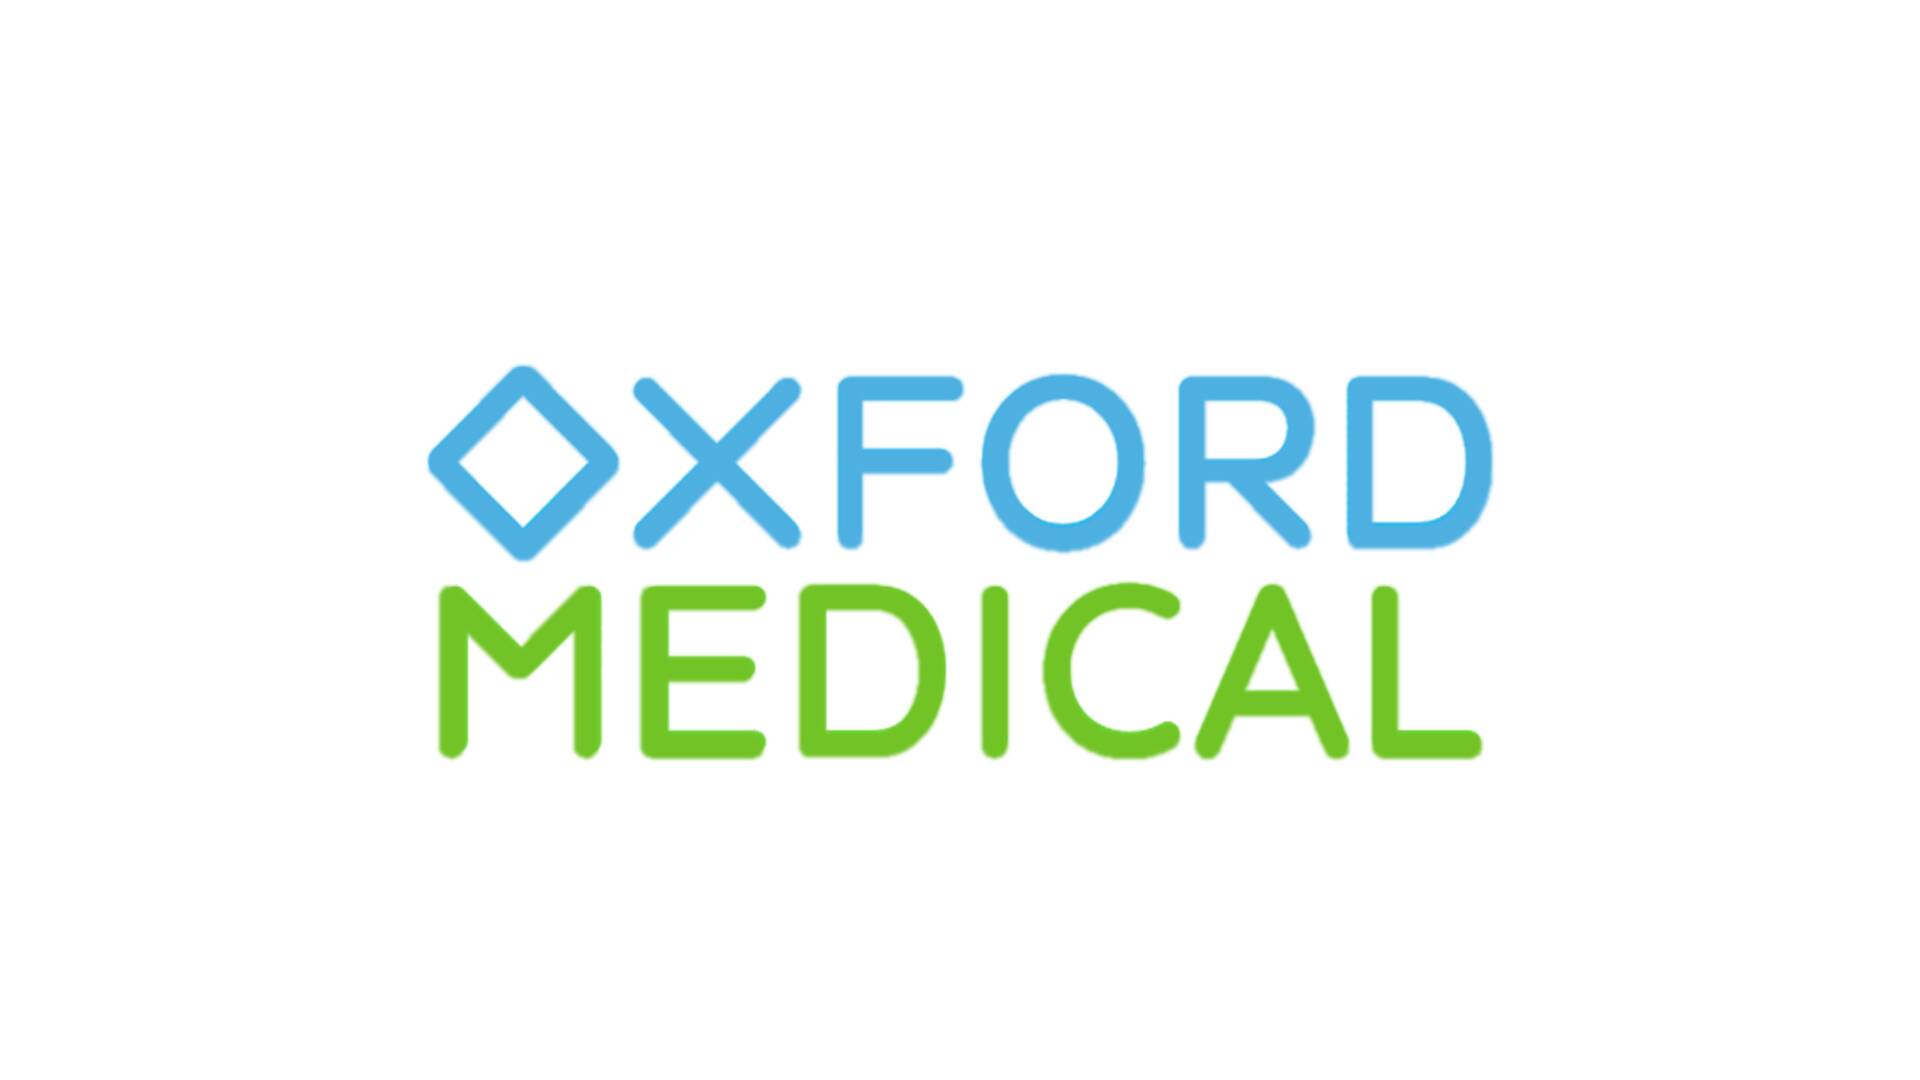 Медичний центр Медичний центр Оксфорд Медікал (Oxford Medical) Рівне РІВНЕ: опис, послуги, відгуки, рейтинг, контакти, записатися онлайн на сайті h24.ua